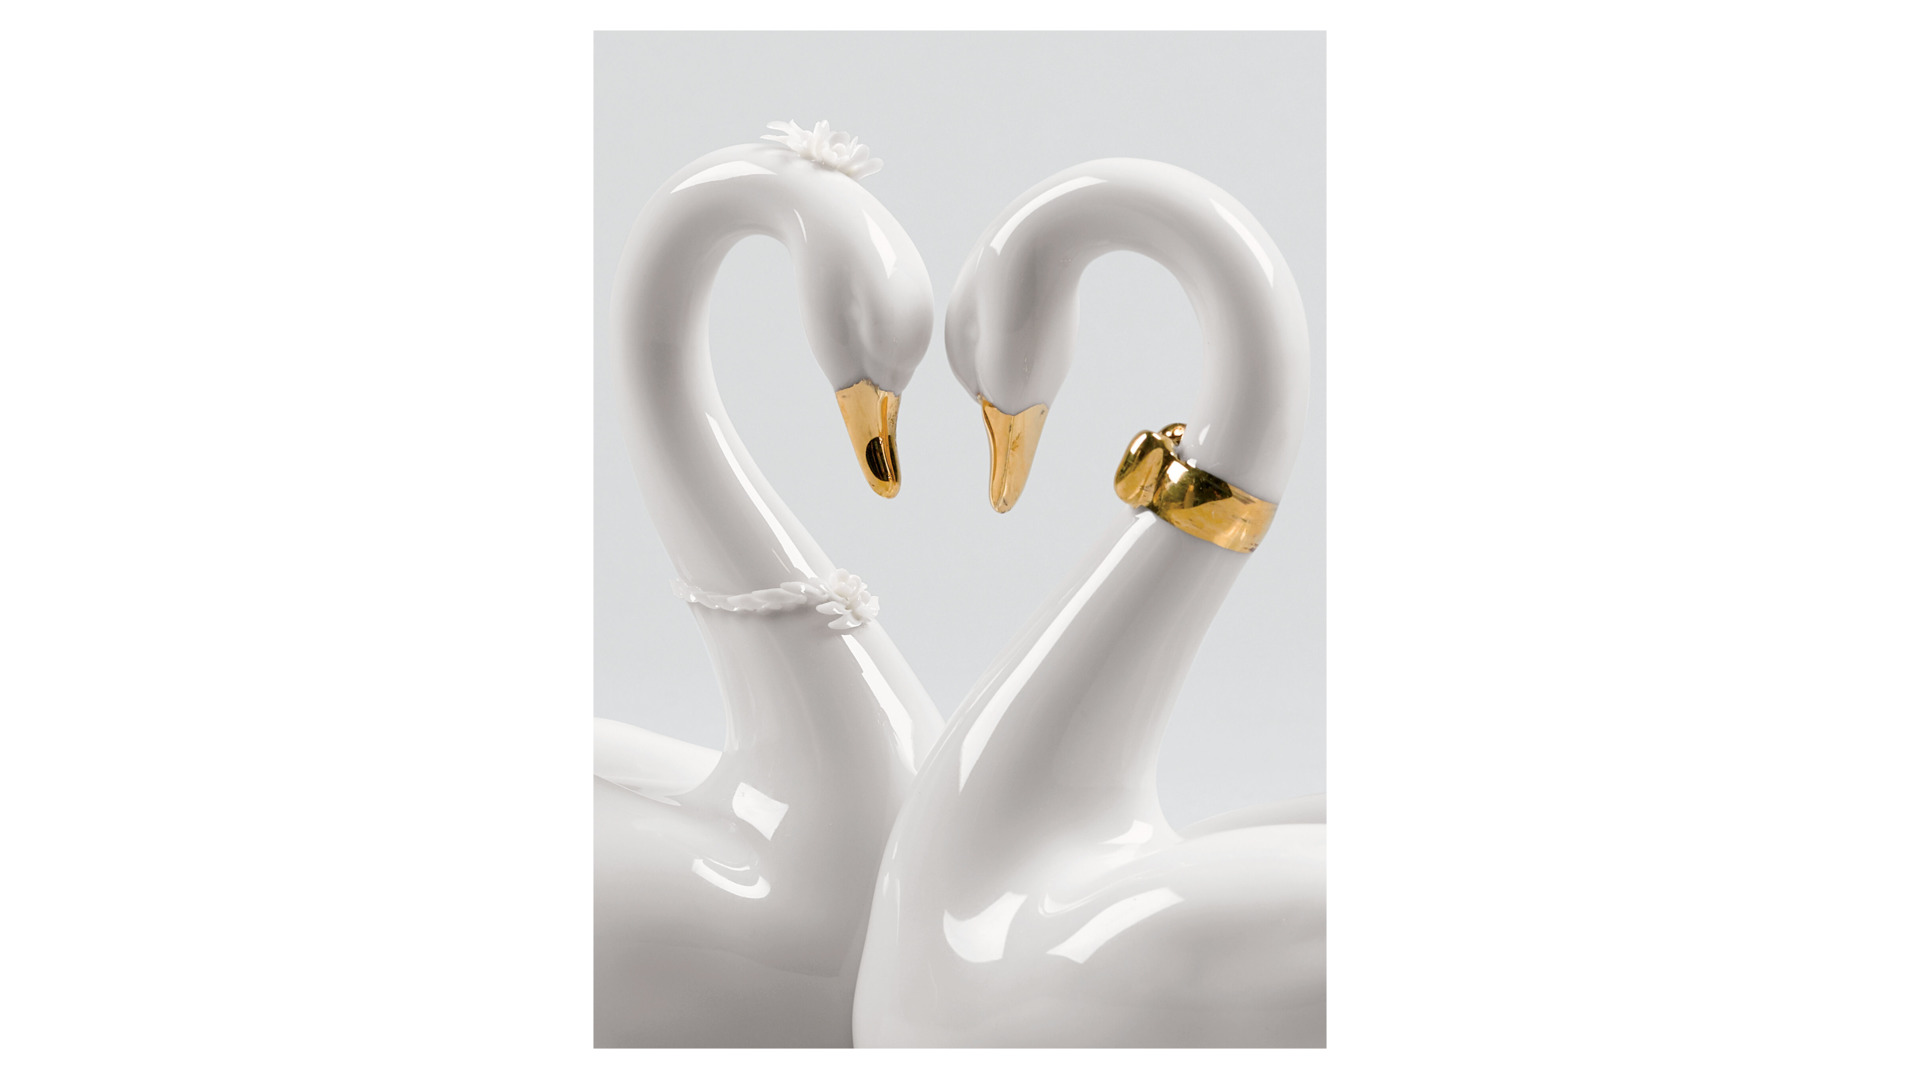 Фигурка Lladro Бесконечная любовь, золото 27х13 см, фарфор